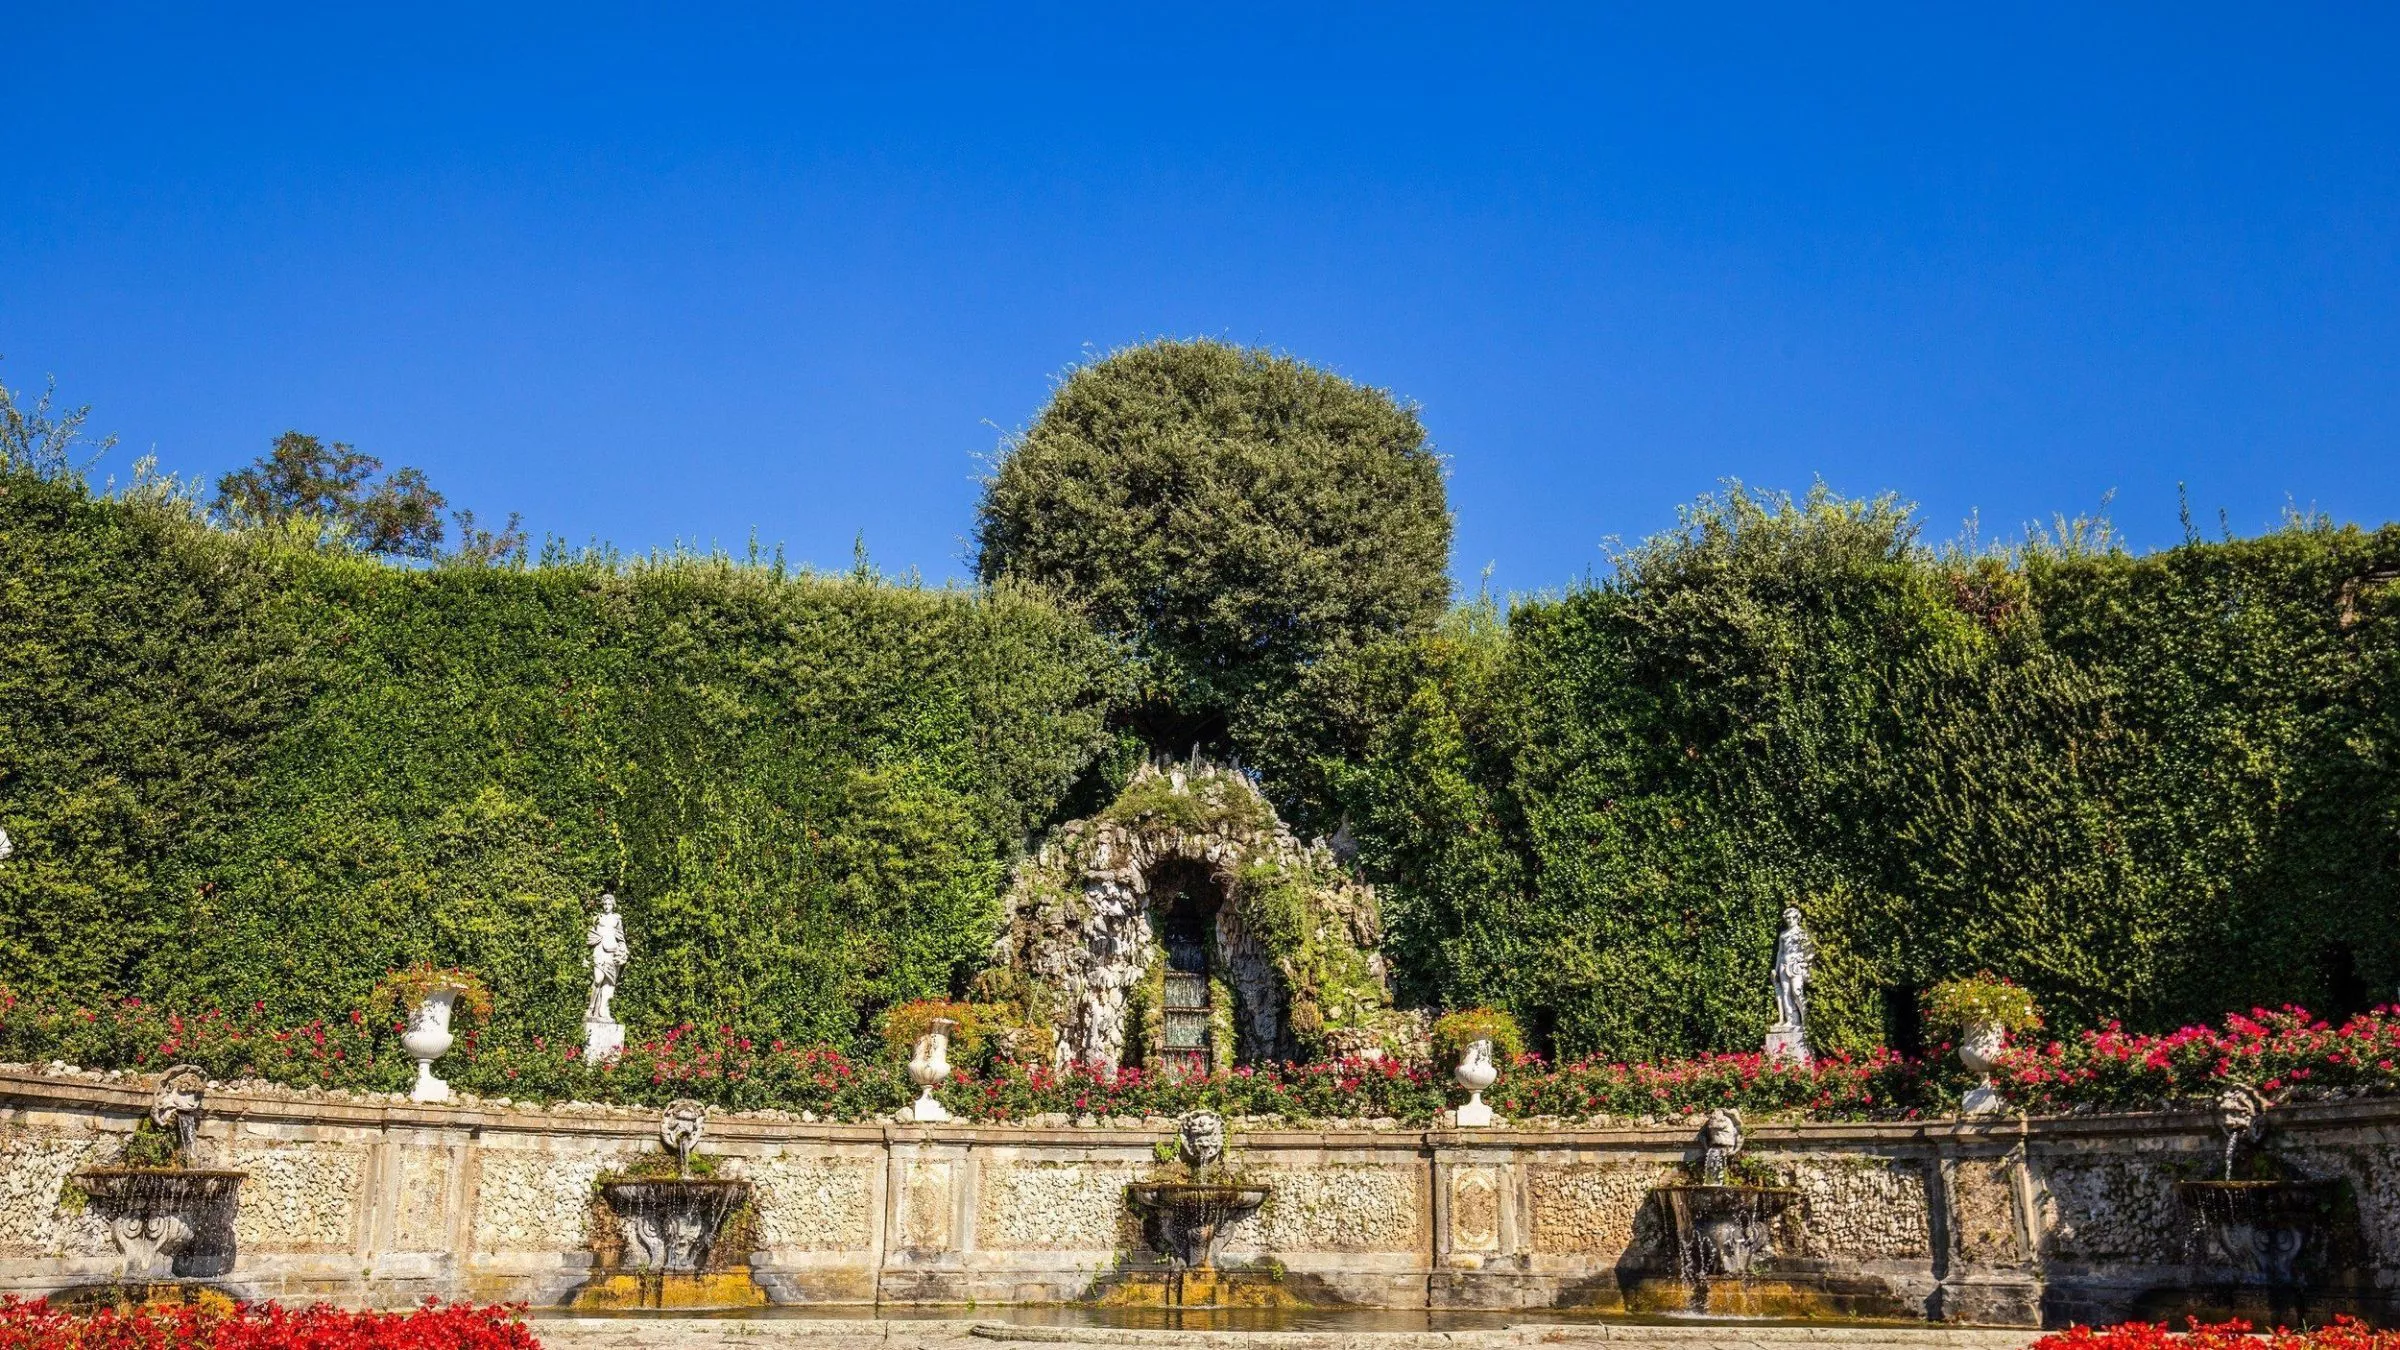 Das Wassertheater der Villa Reale di Marlia ist typisch für den Spätbarock. Aus einer Tropfsteingrotte fließt das Wasser über brausende Kaskaden und mächtige Fratzen in das halbrunde Becken